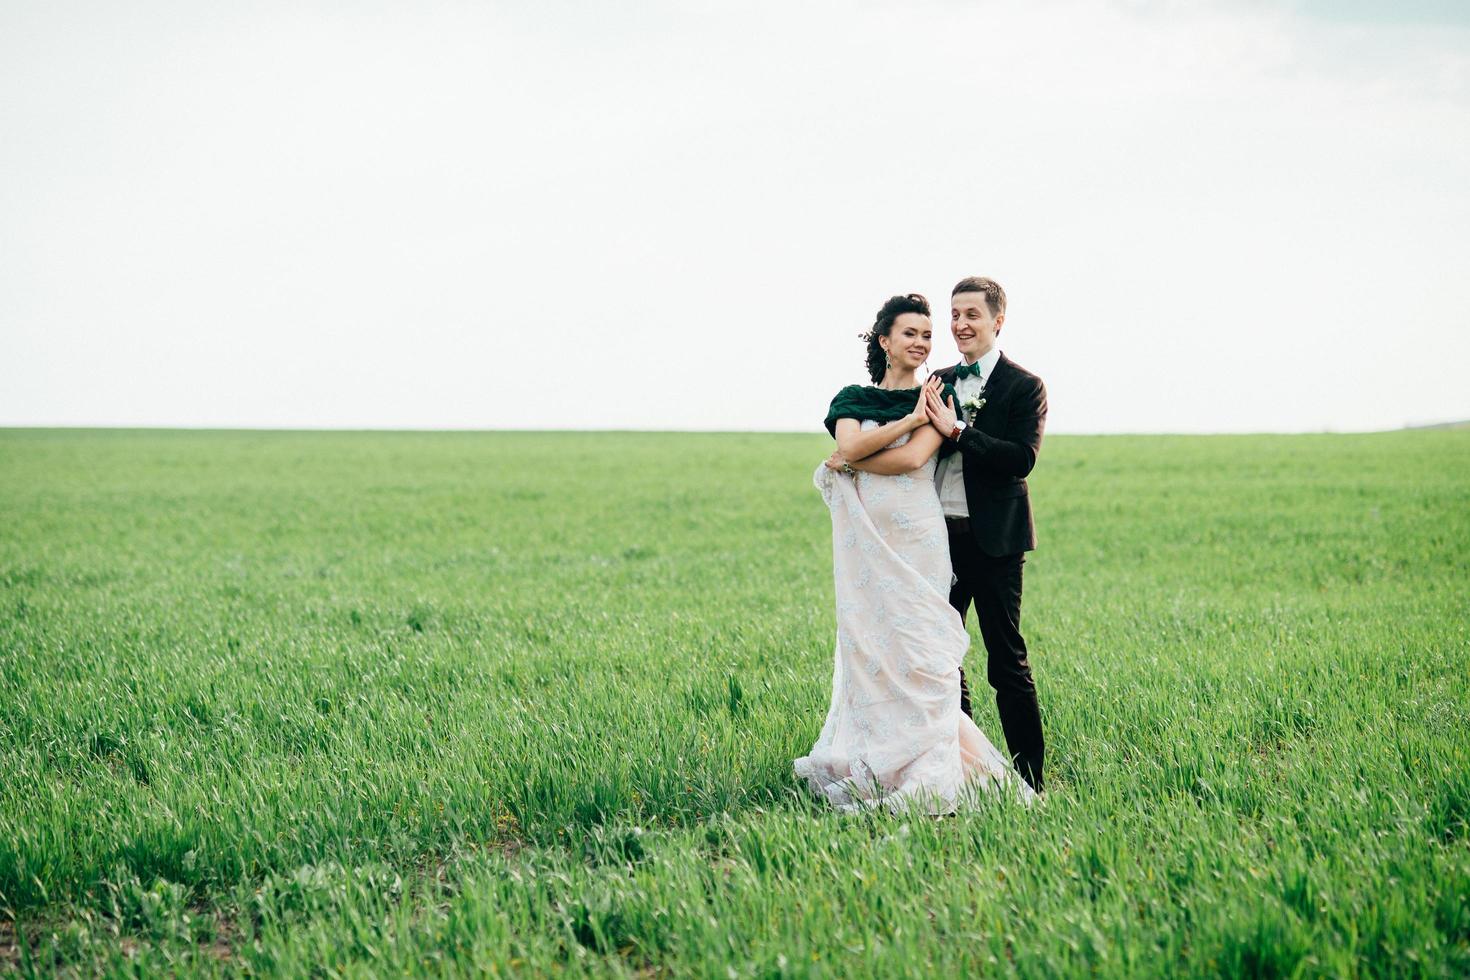 el novio con un traje marrón y la novia con un vestido color marfil en un campo verde foto